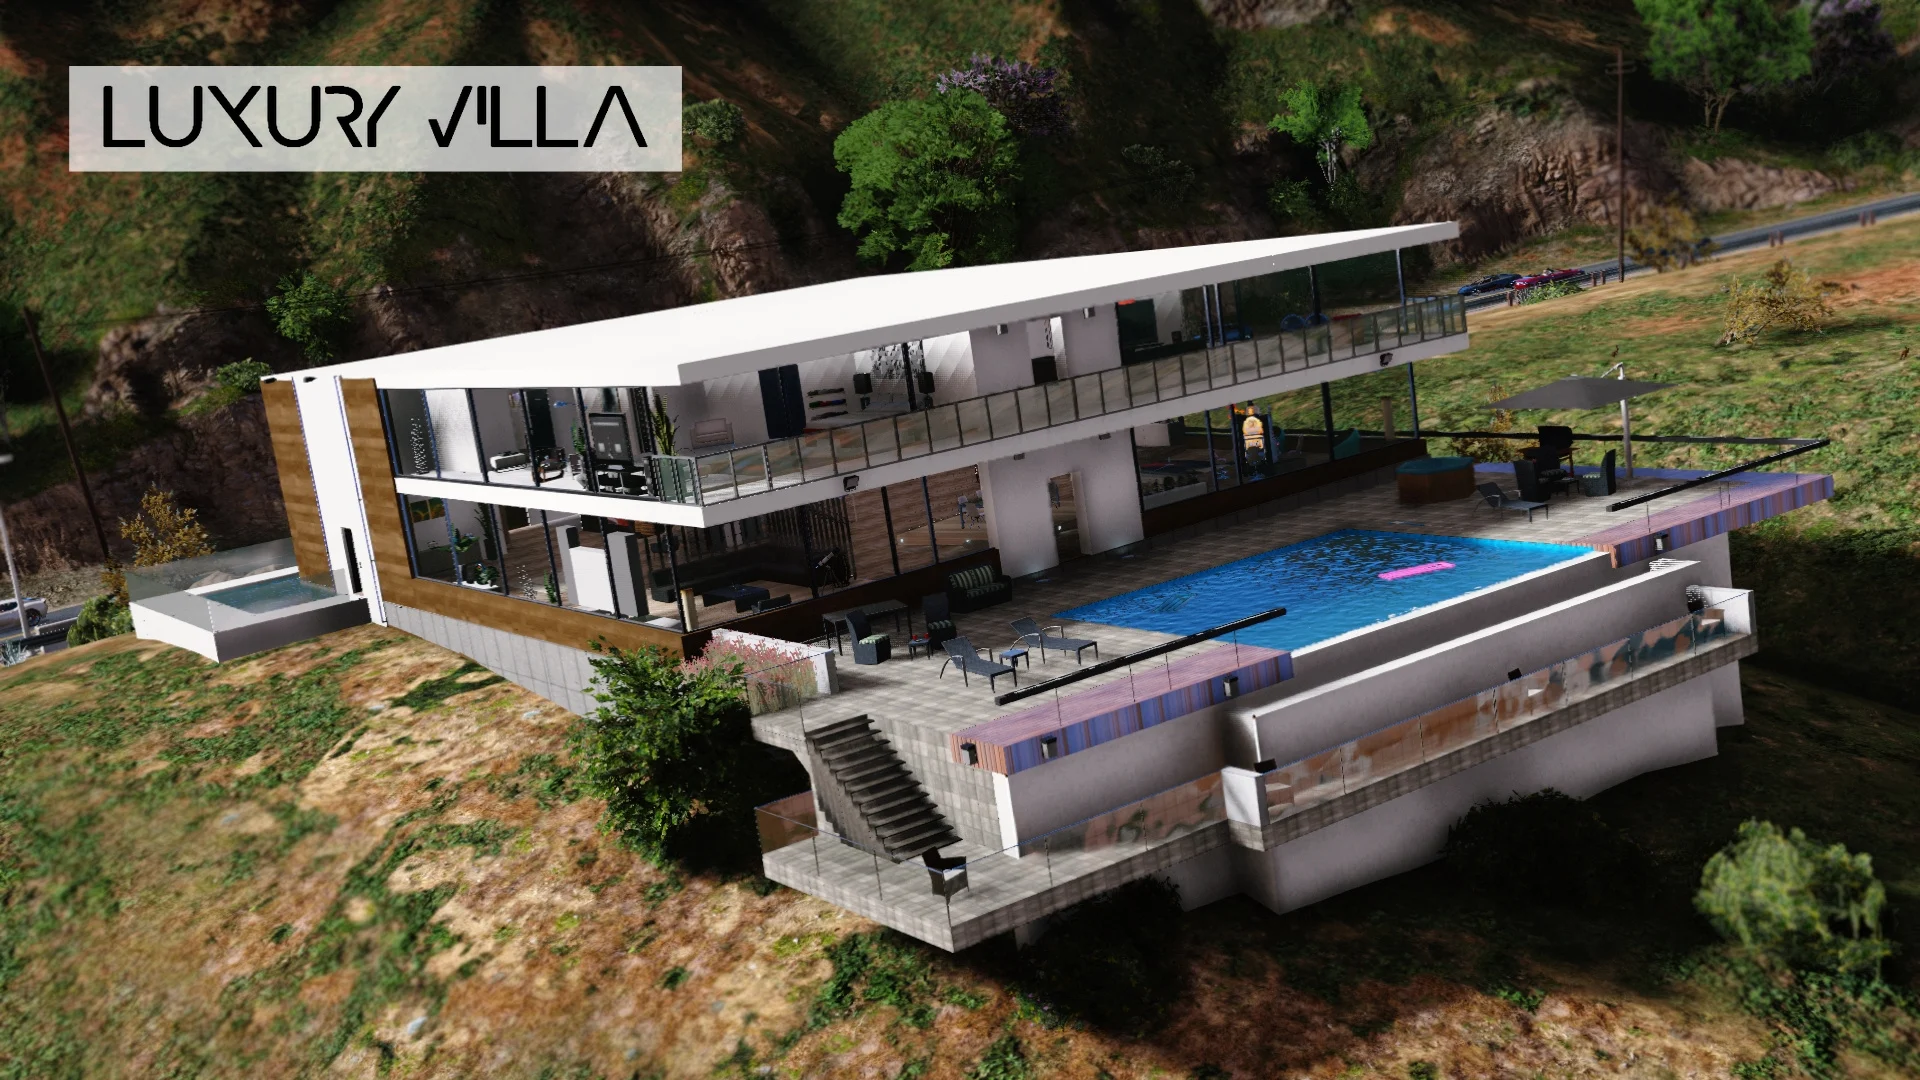 Luxury Villa ! [Menyoo] 1.2